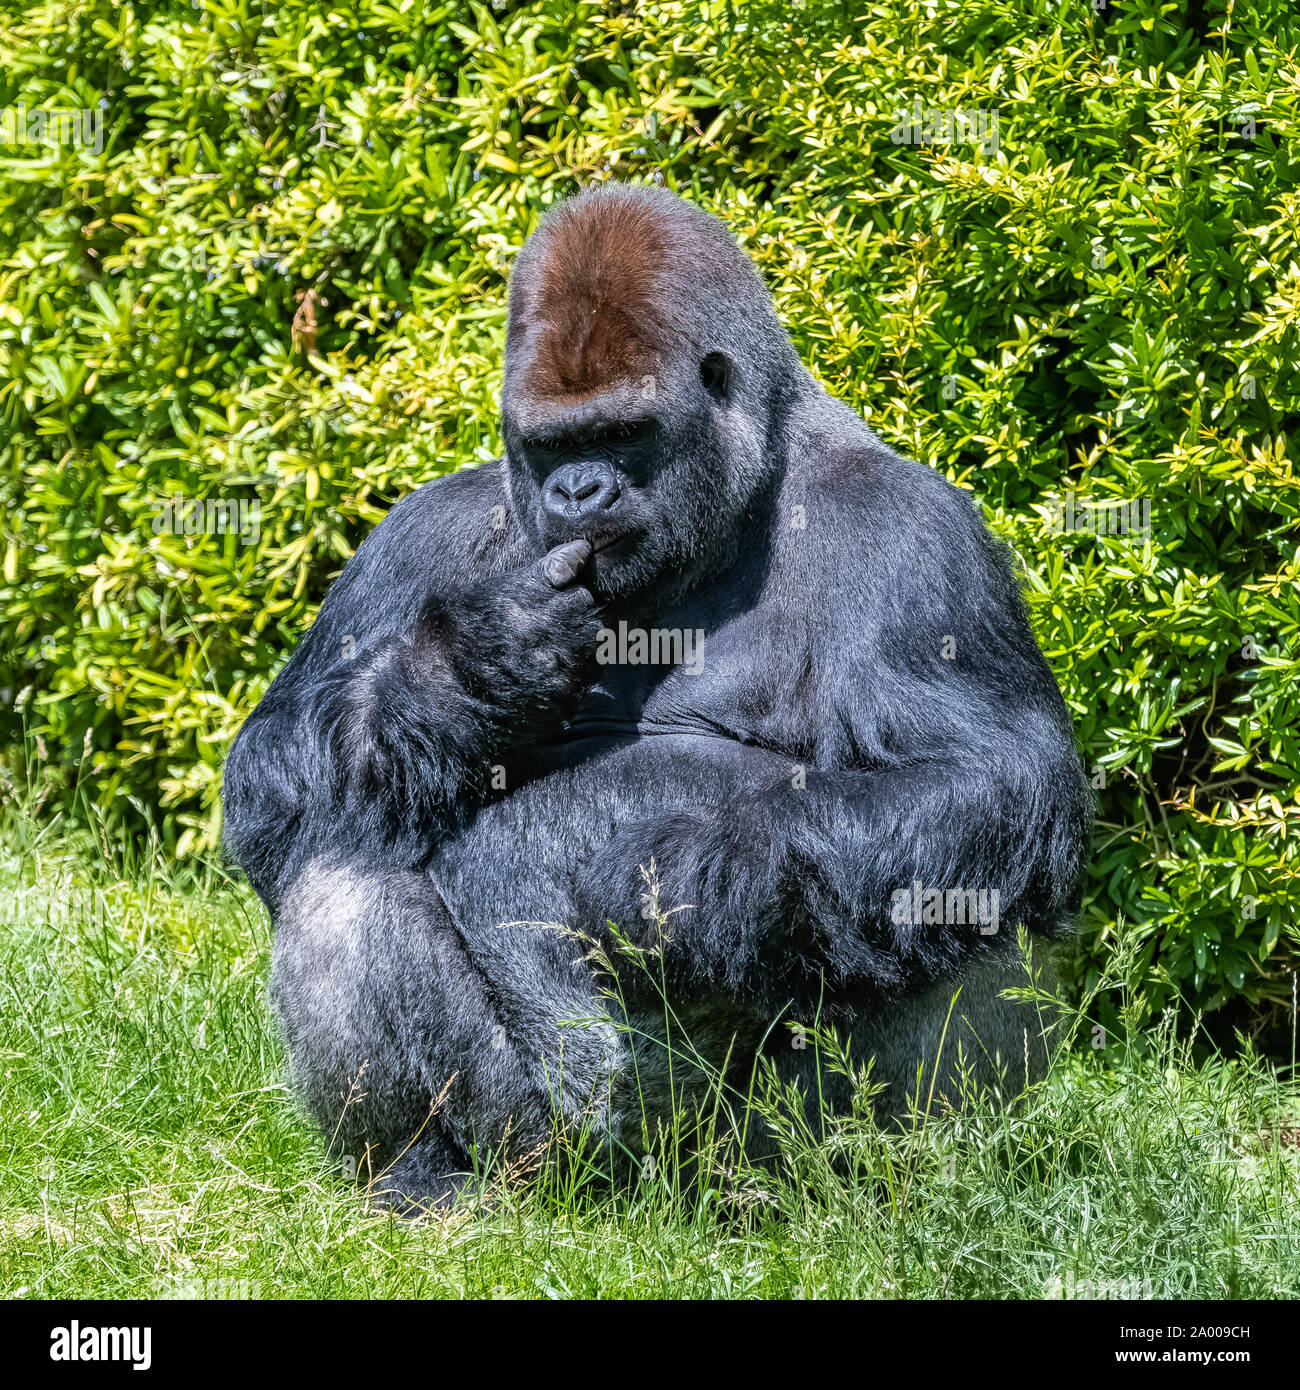 Gorilla, scimmia, maschio dominante seduto in erba, atteggiamento divertente Foto Stock